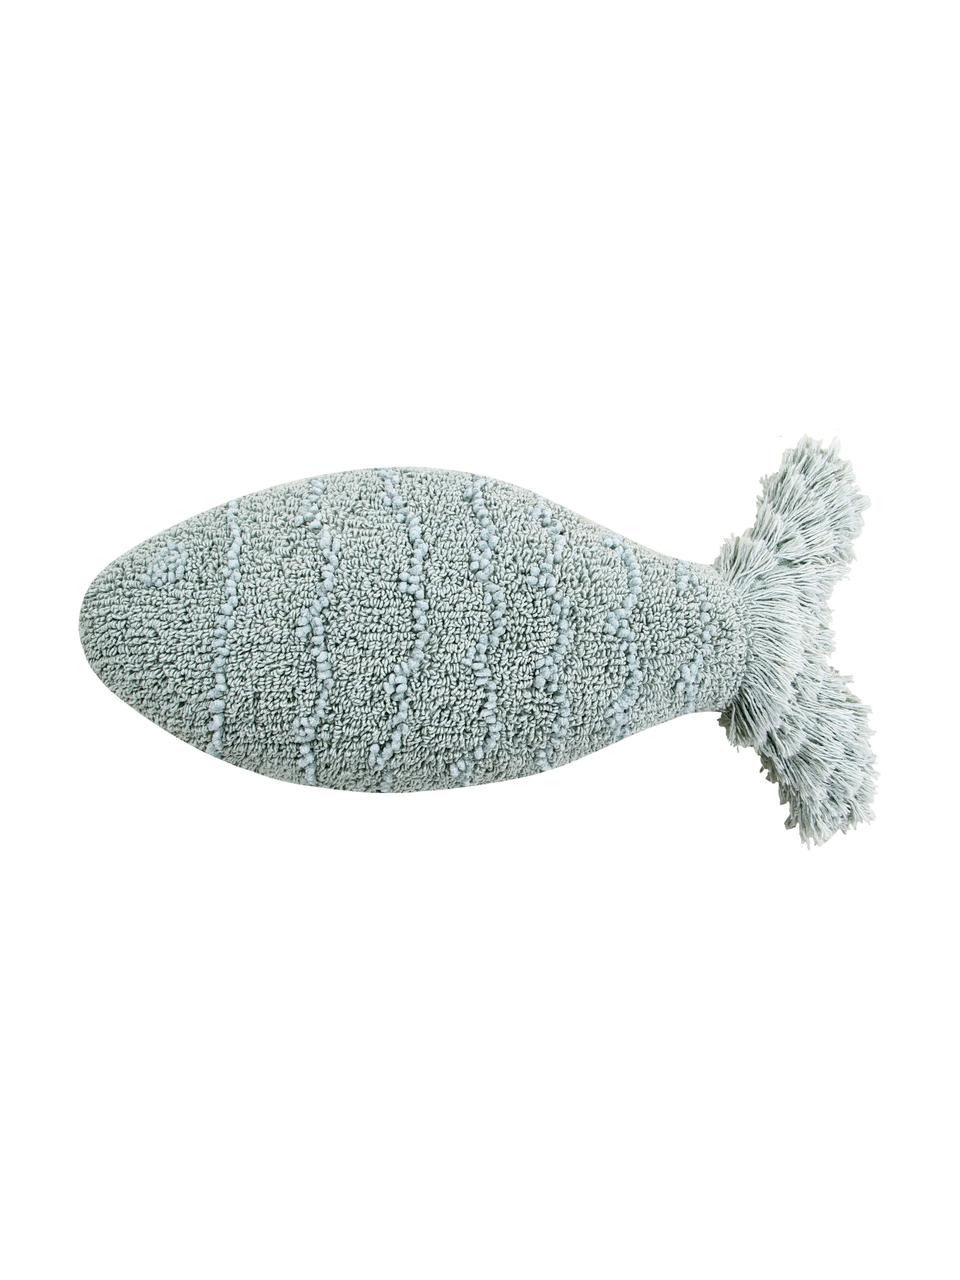 Cojín Baby Fish, con relleno, Funda: 97% algodón, 3% algodón r, Azul, An 30 x L 60 cm